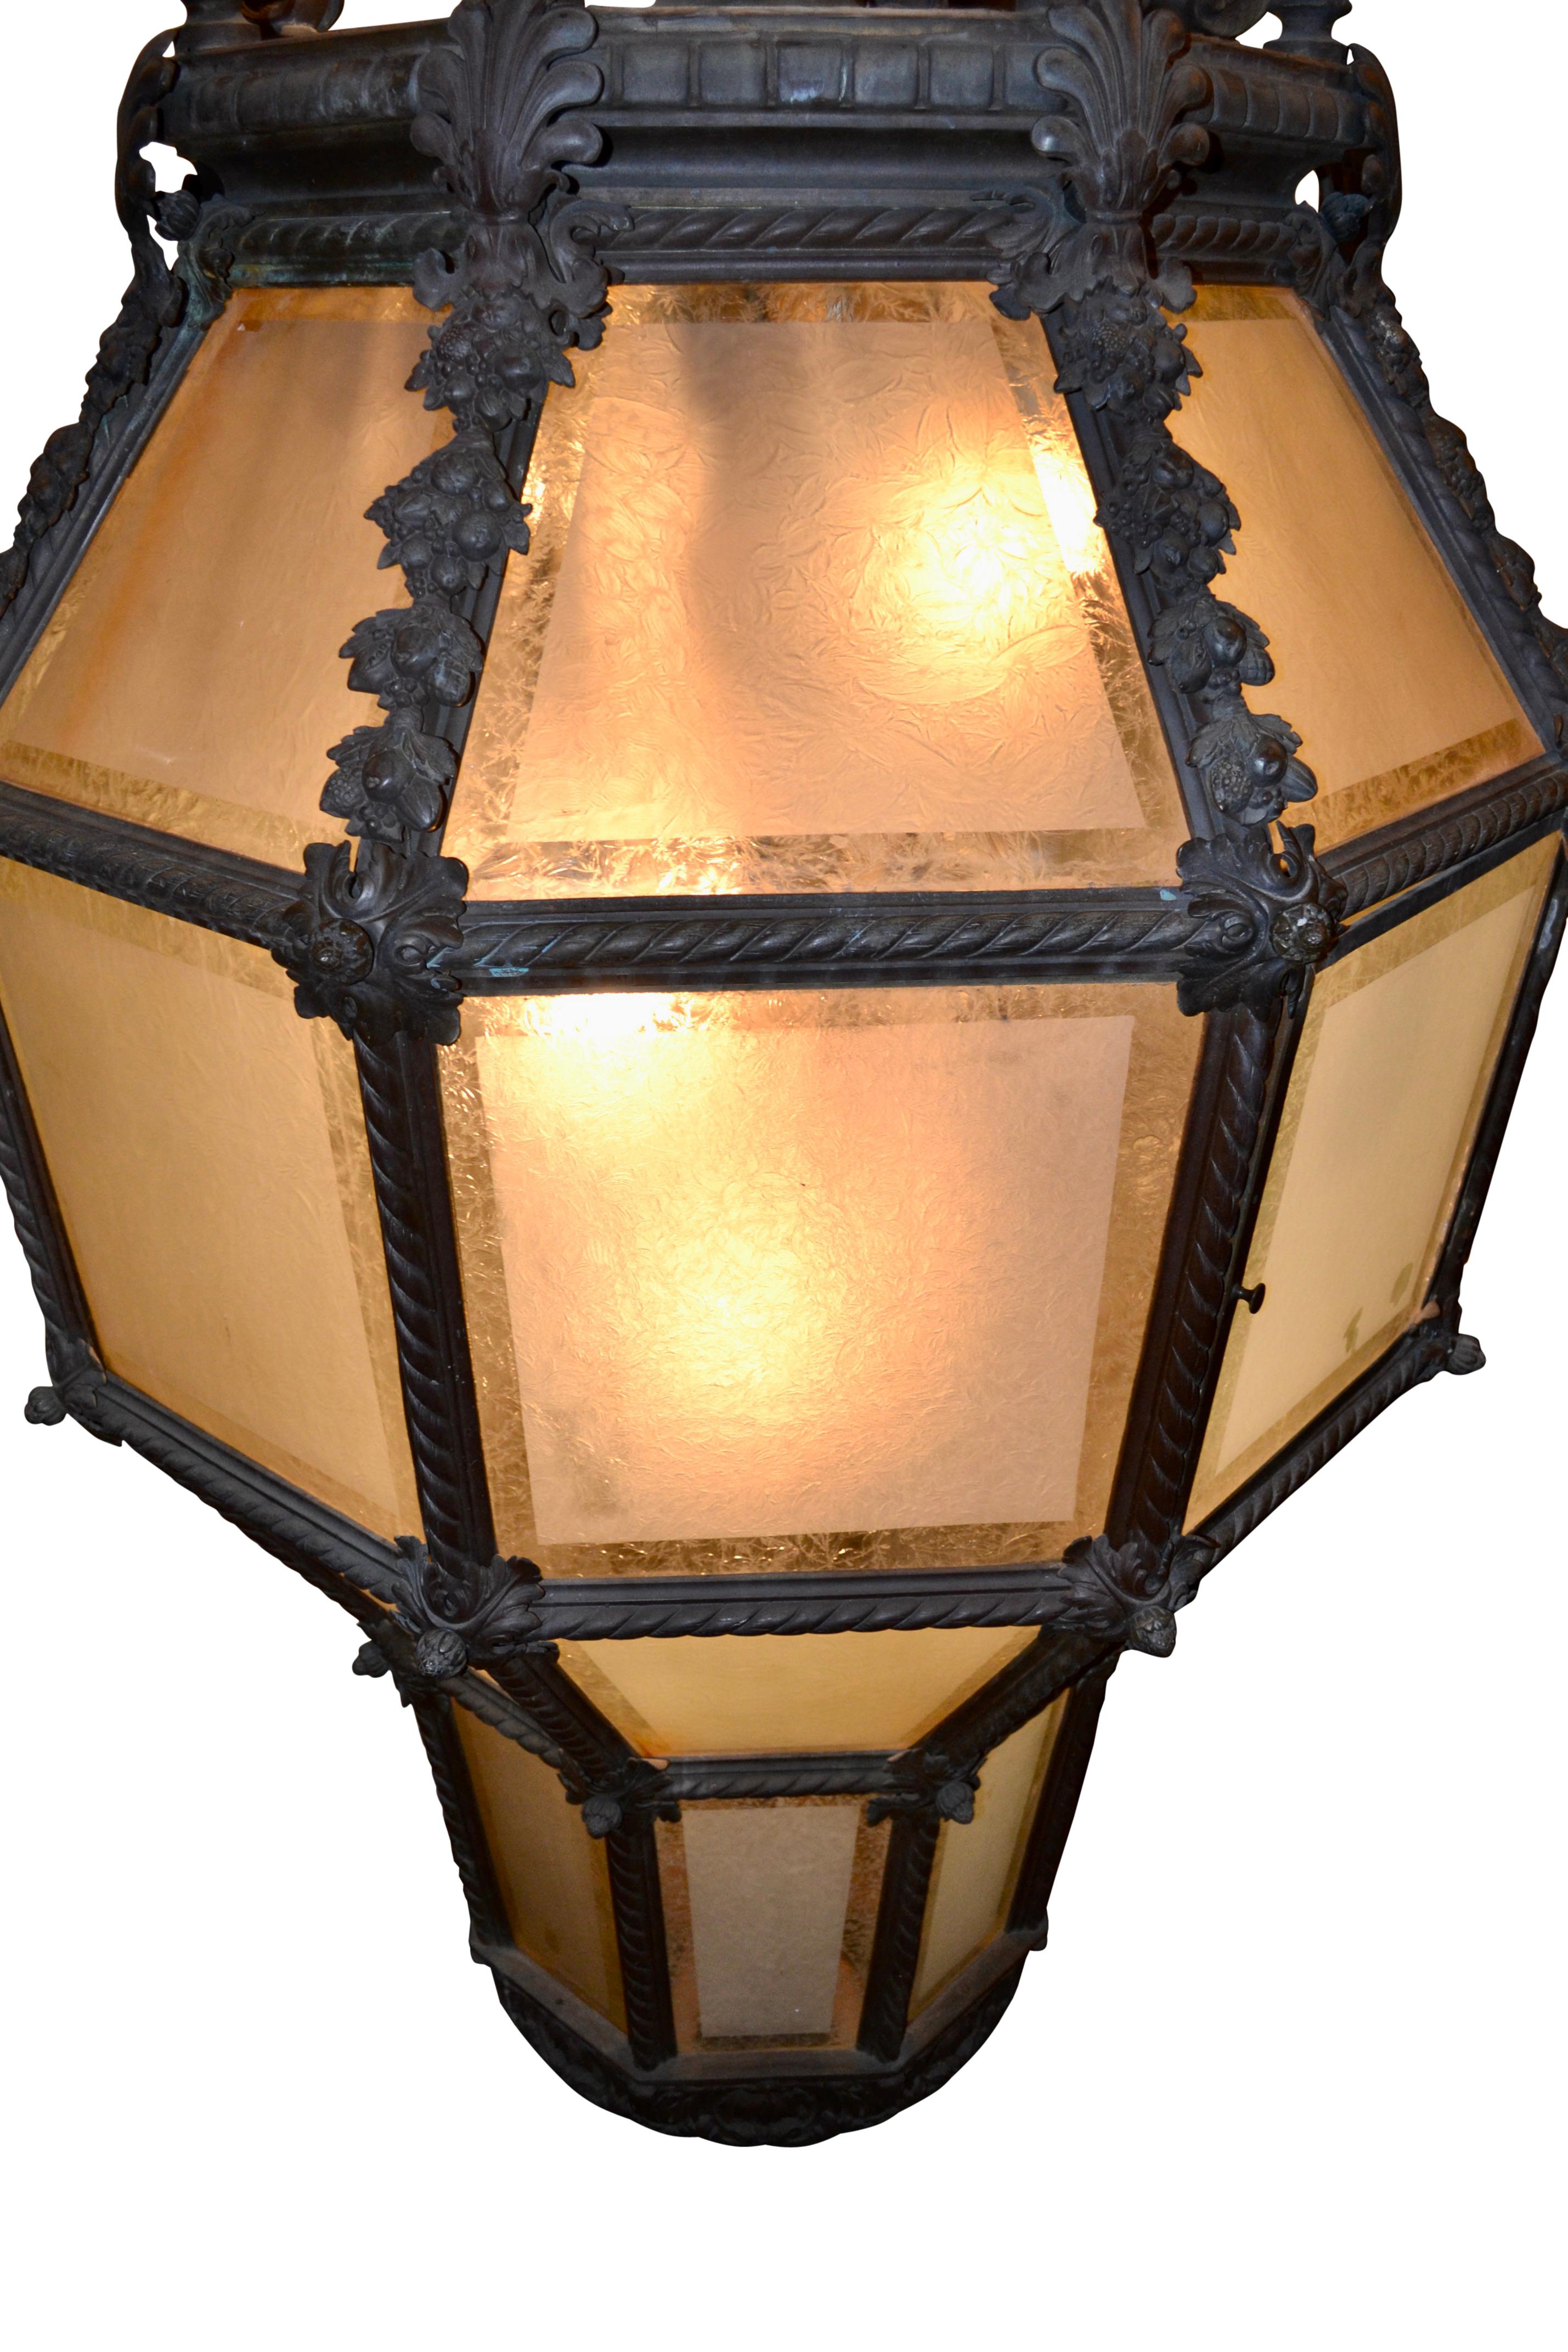 Cast  Monumental Bronze Porte Cochere or Porch Lantern For Sale